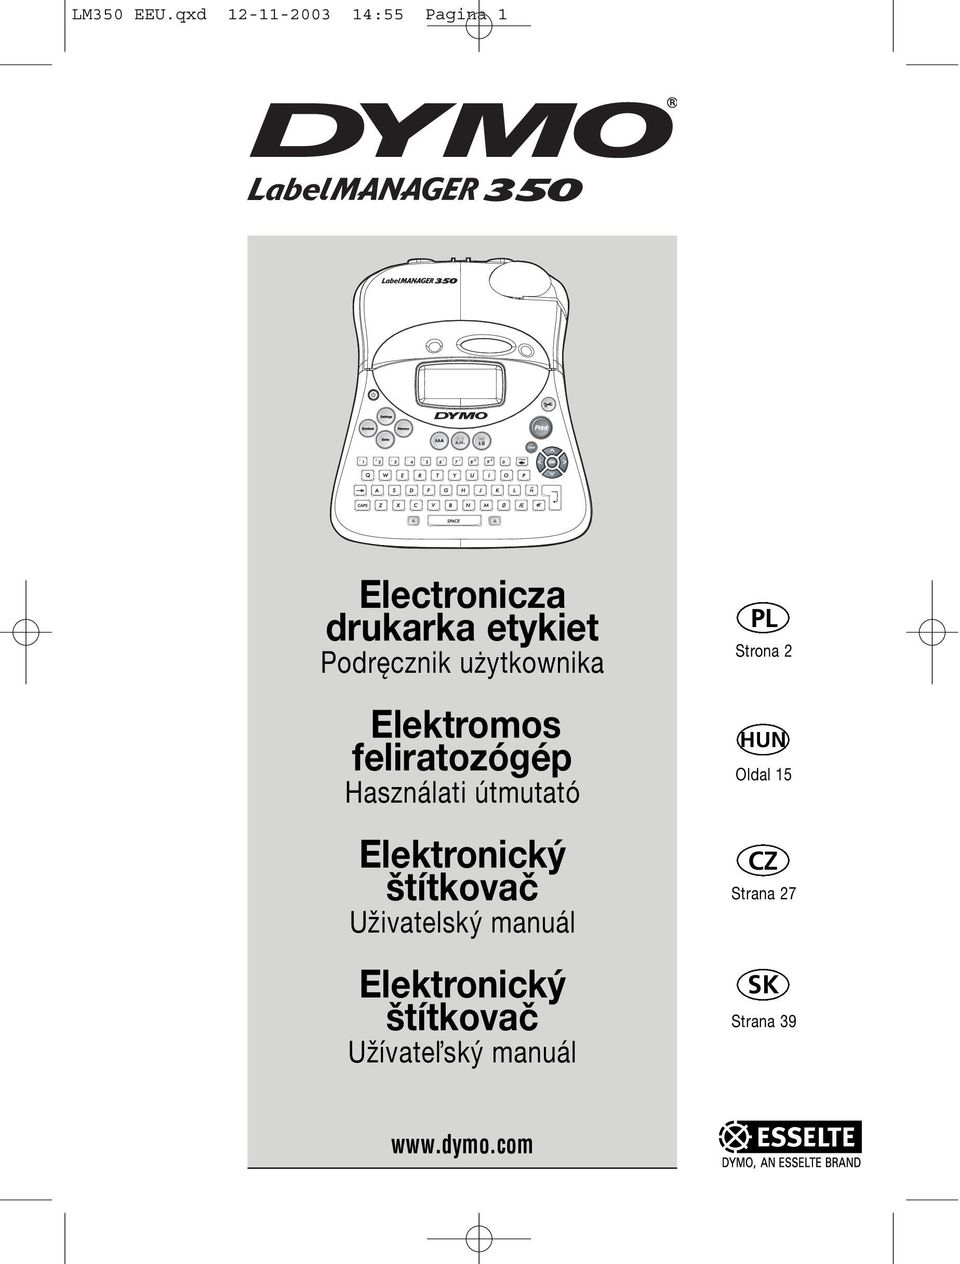 Podręcznik użytkownika Elektromos feliratozógép Használati útmutató